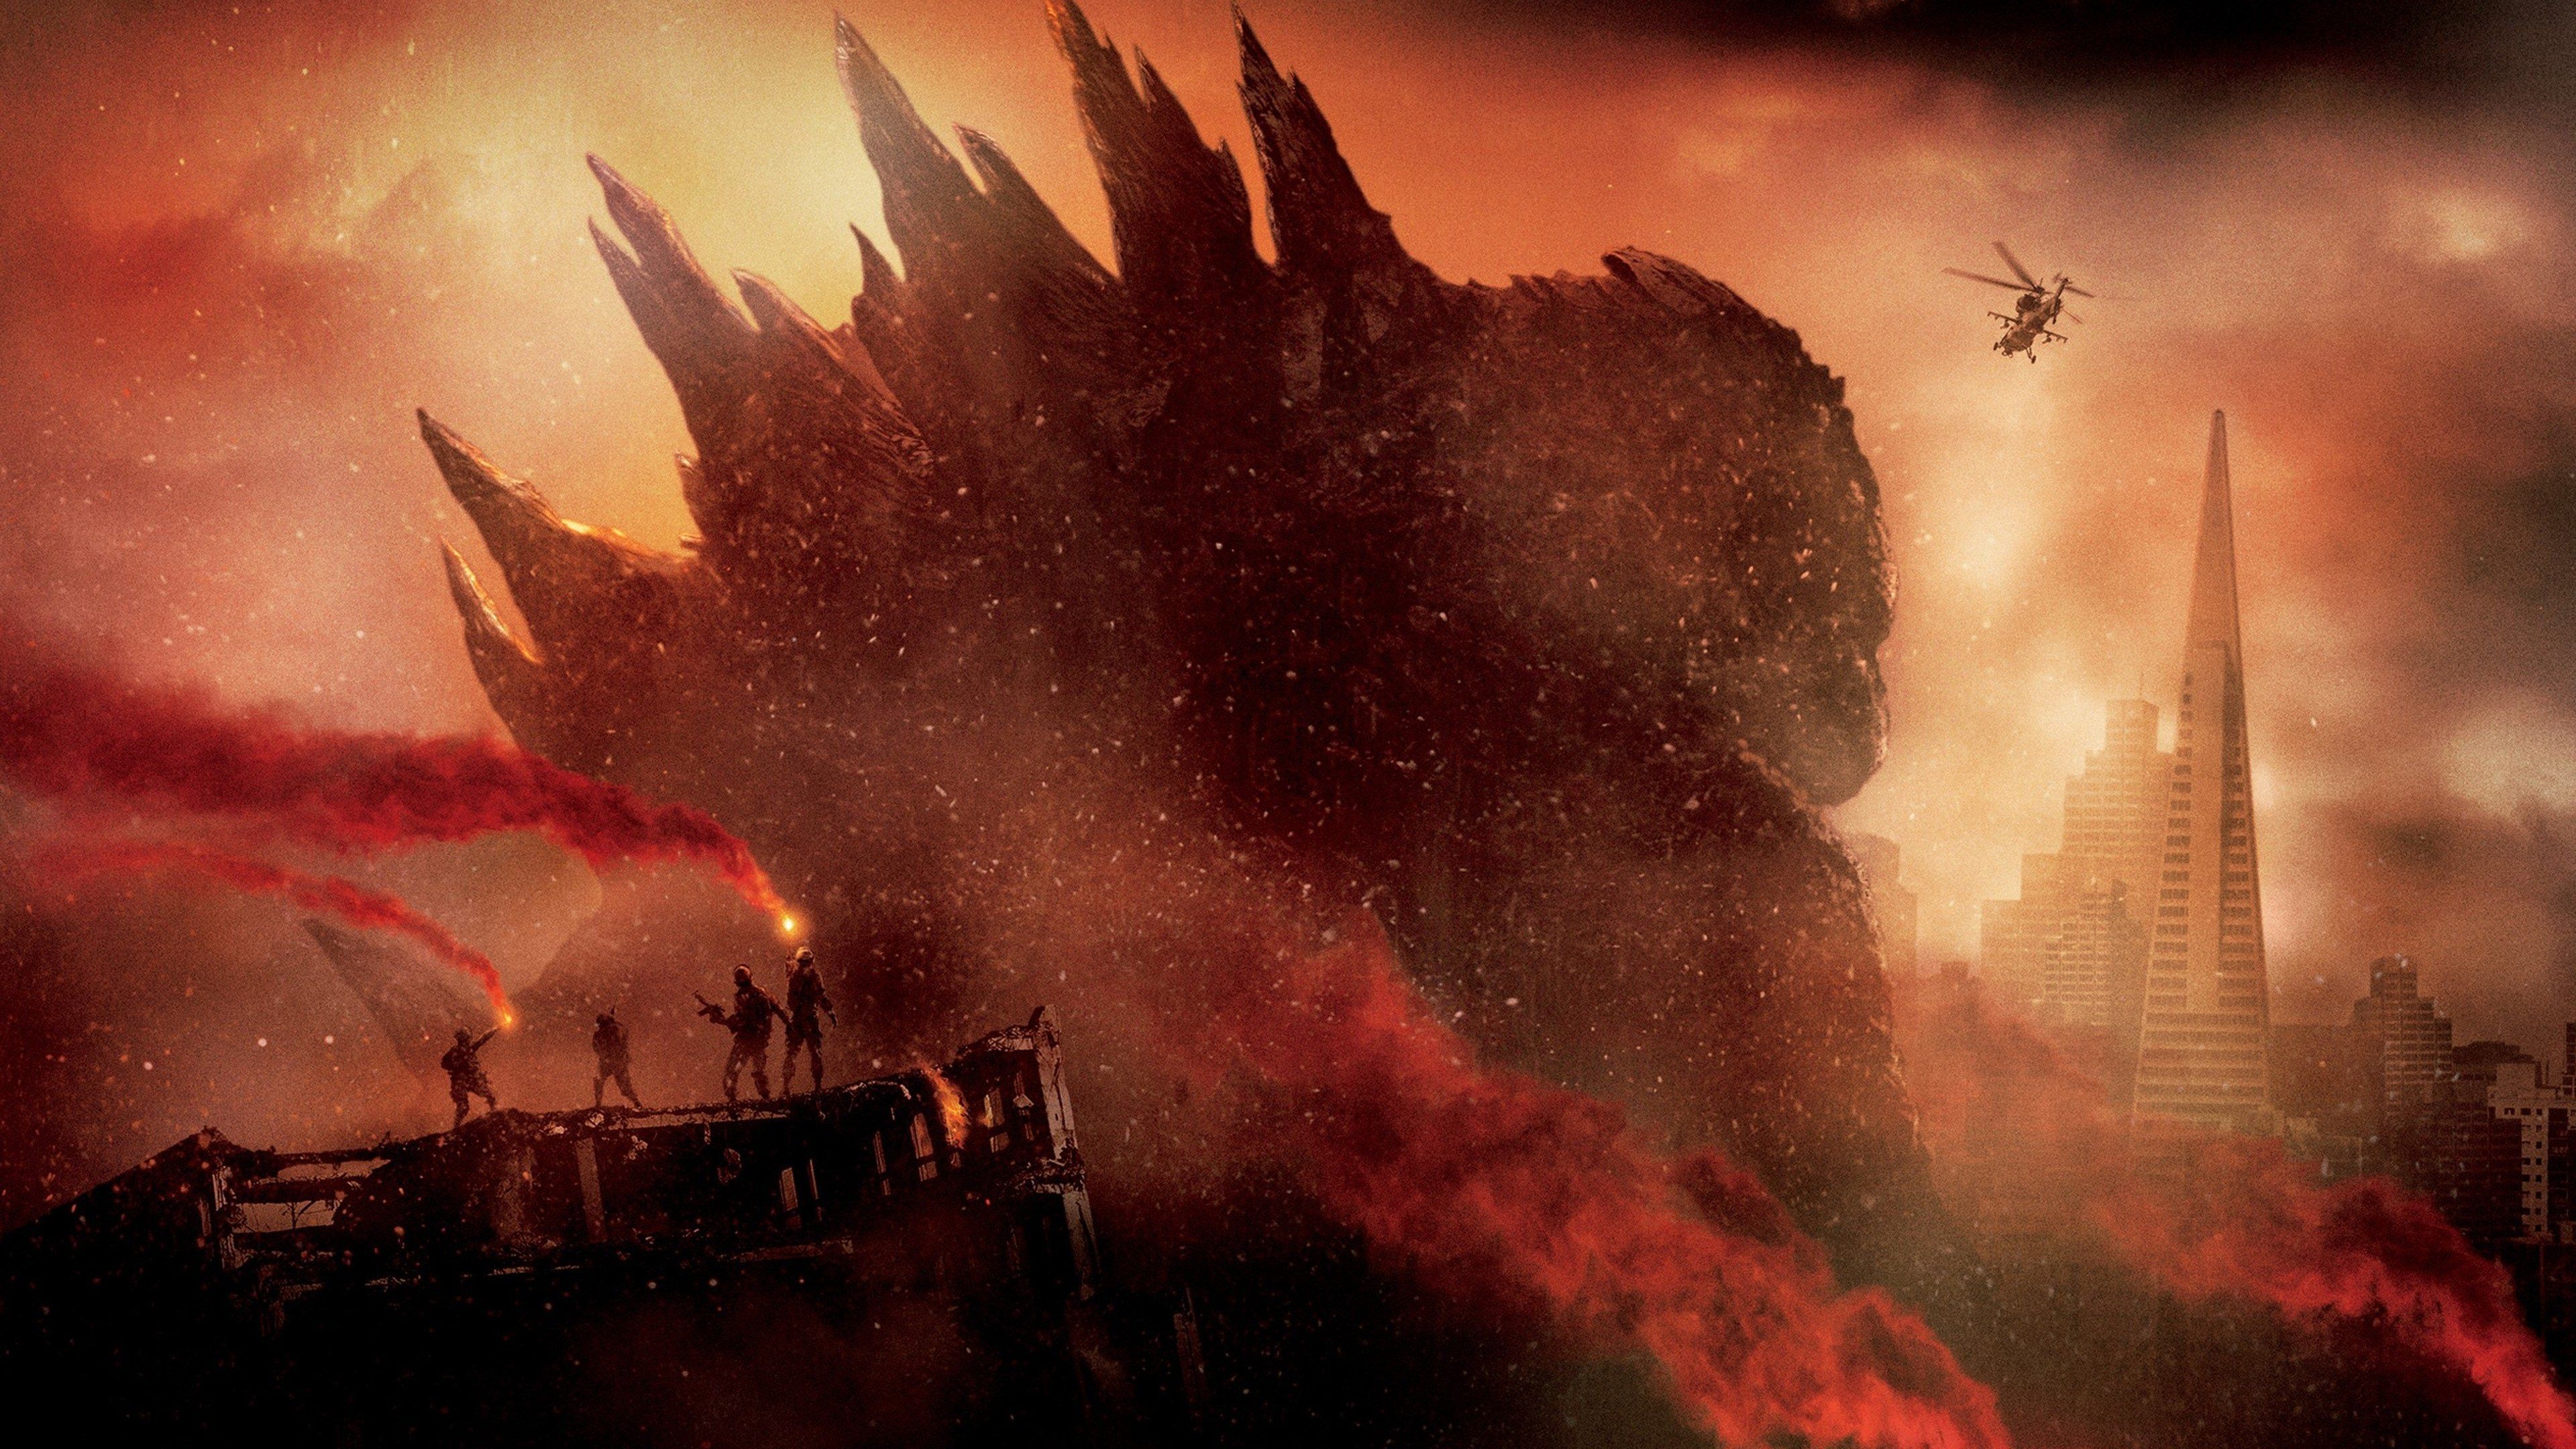 godzilla 4k ultra HD desktop wallpaper. Godzilla wallpaper, Godzilla, Godzilla 2014 movie